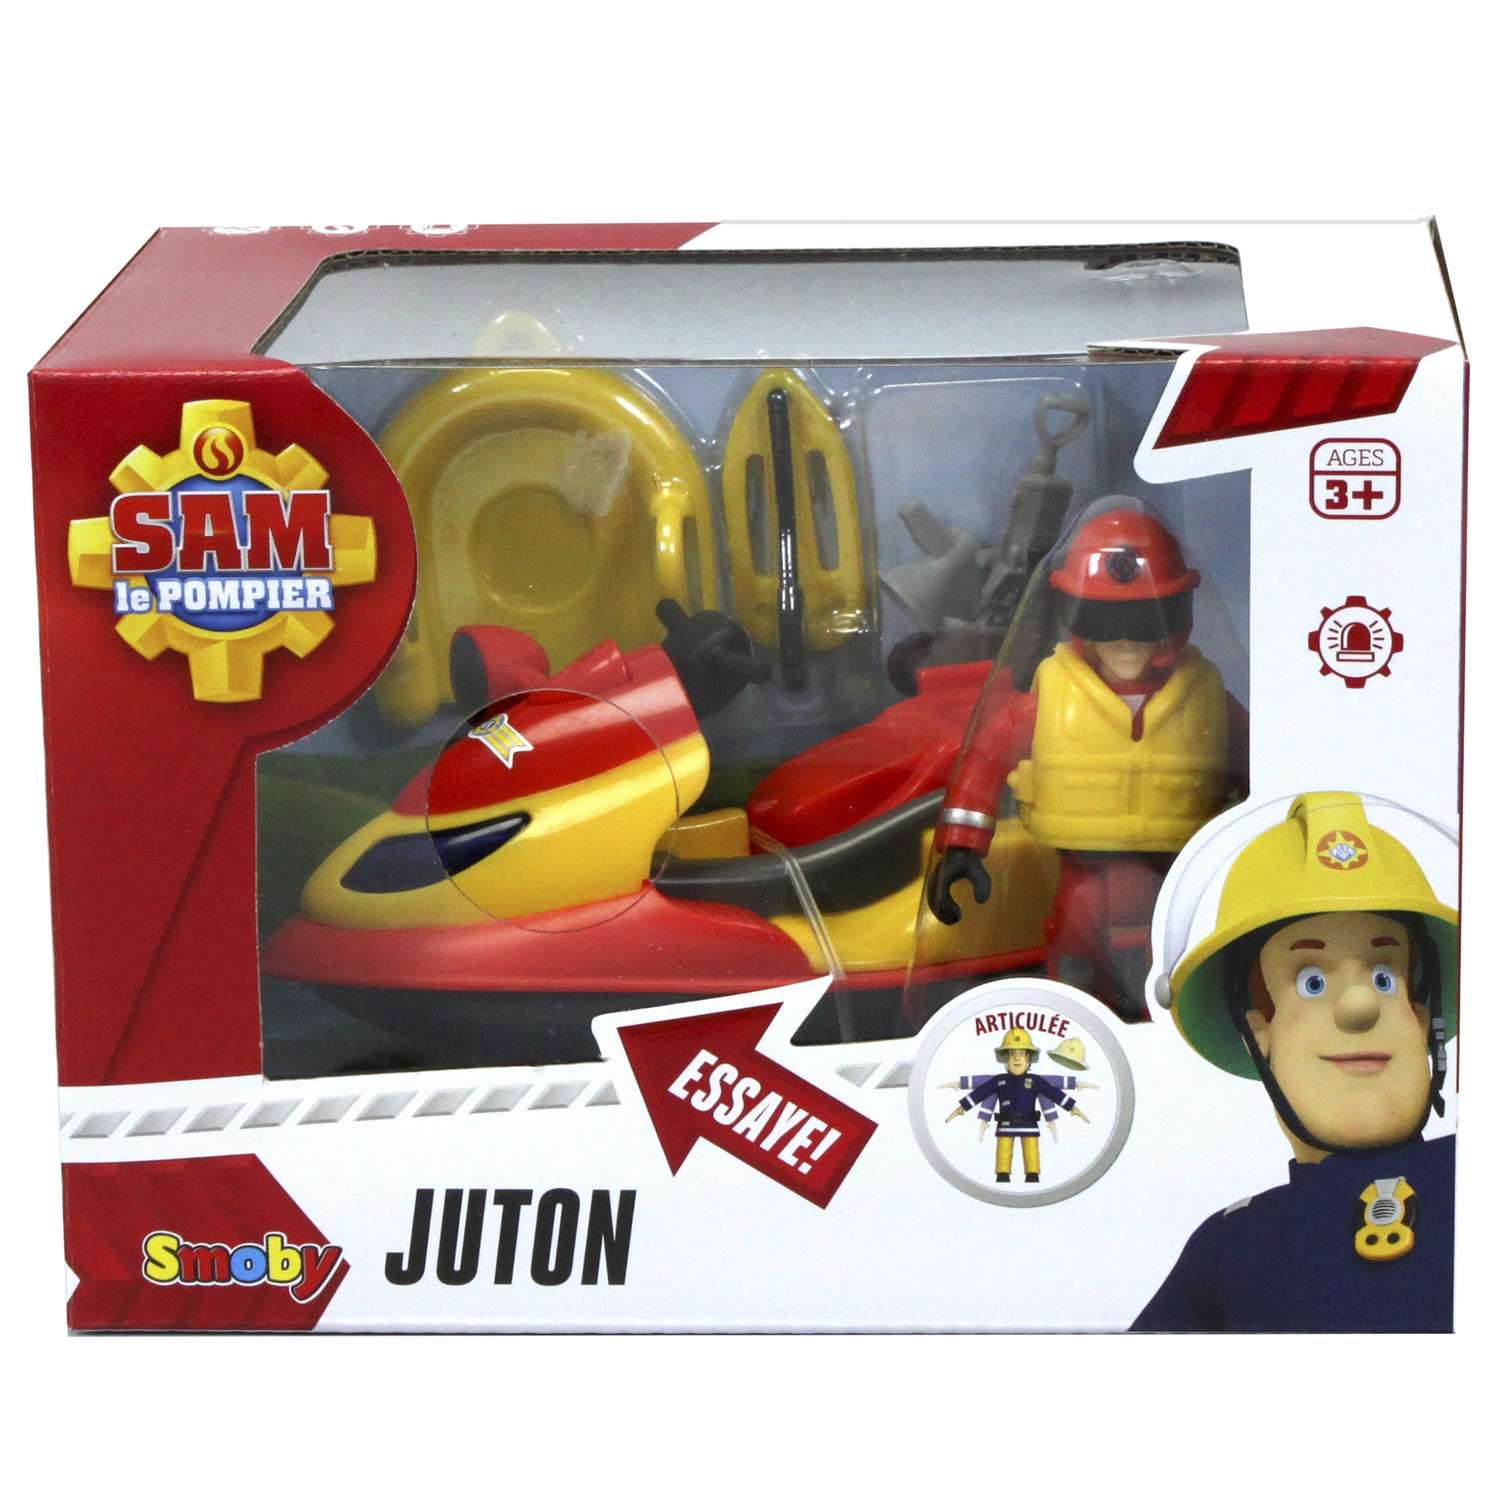 Гидроцикл Fireman Sam со светом акс + фигурка 9251662 - фото 2